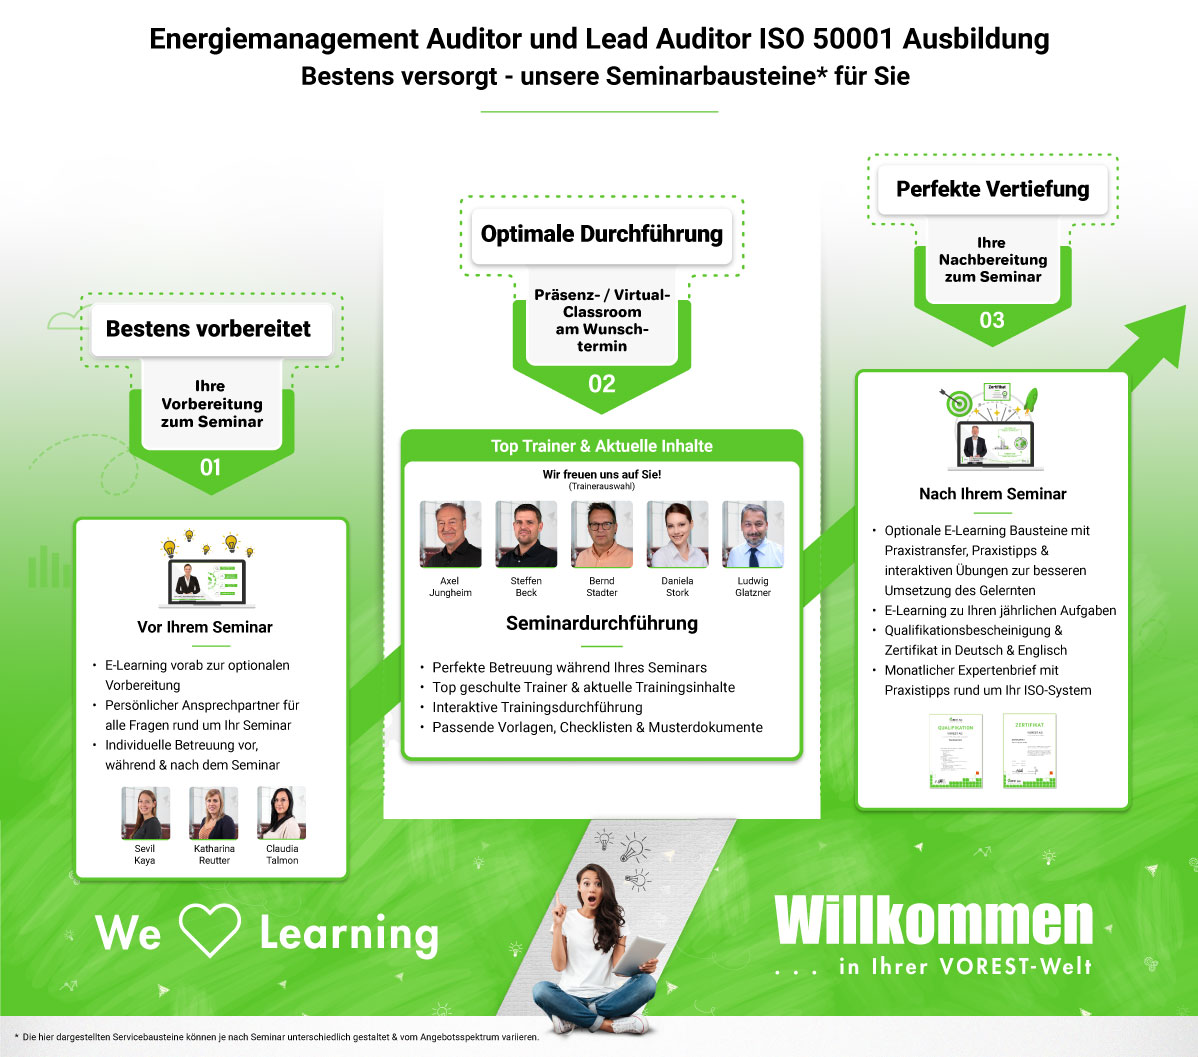 Energiemanagement Auditor und Lead Auditor ISO 50001 Ausbildung